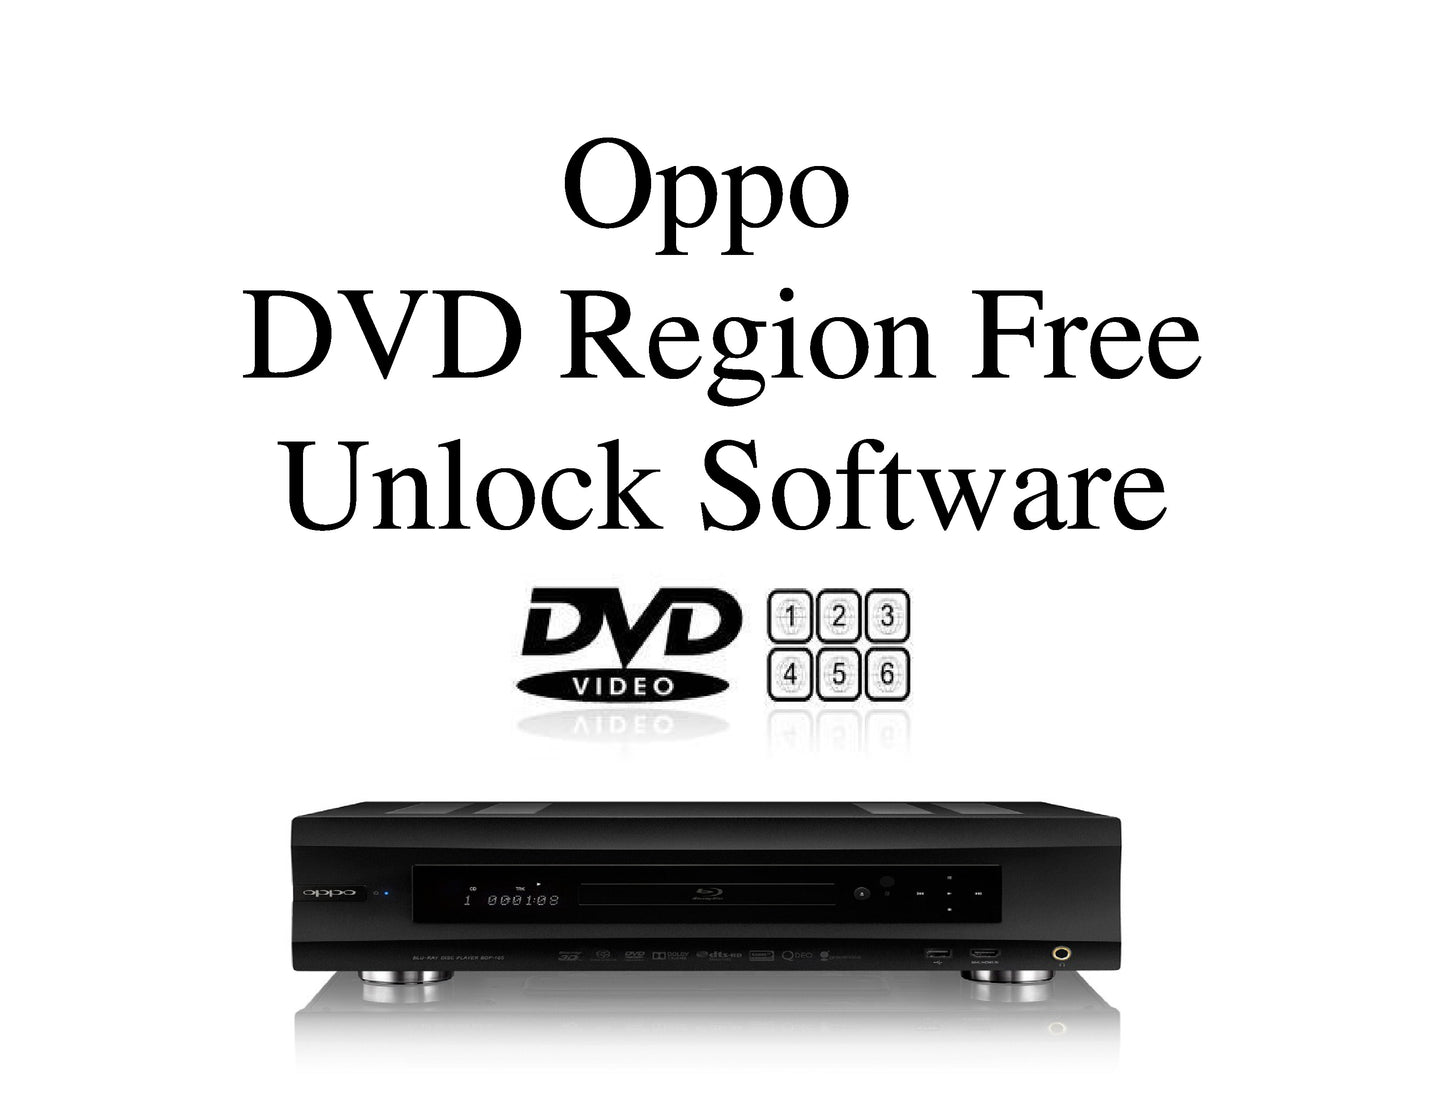 Oppo DVD Region Free Unlock Software